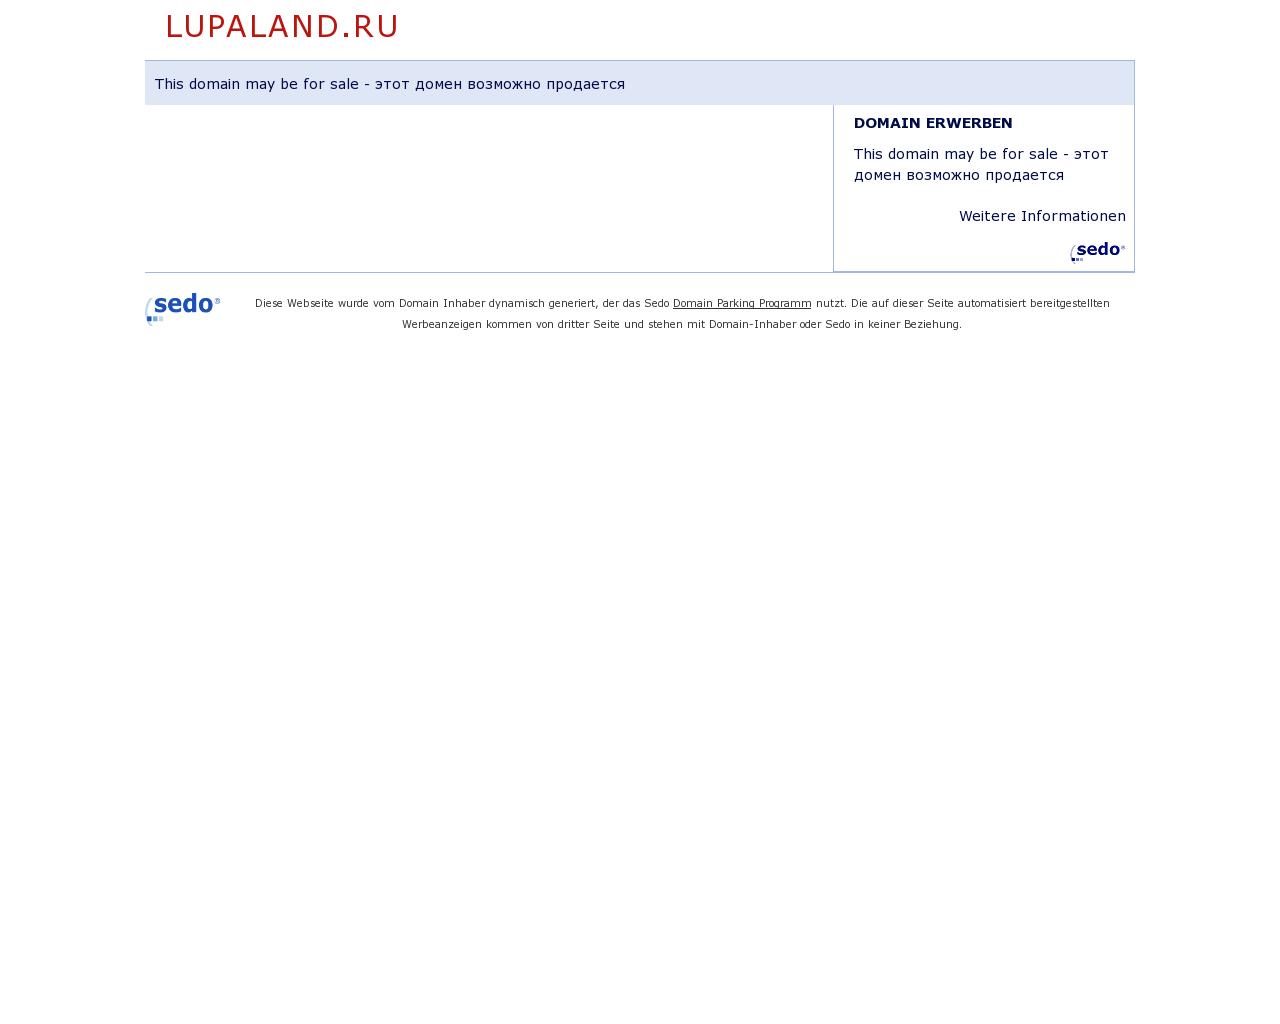 Изображение сайта lupaland.ru в разрешении 1280x1024